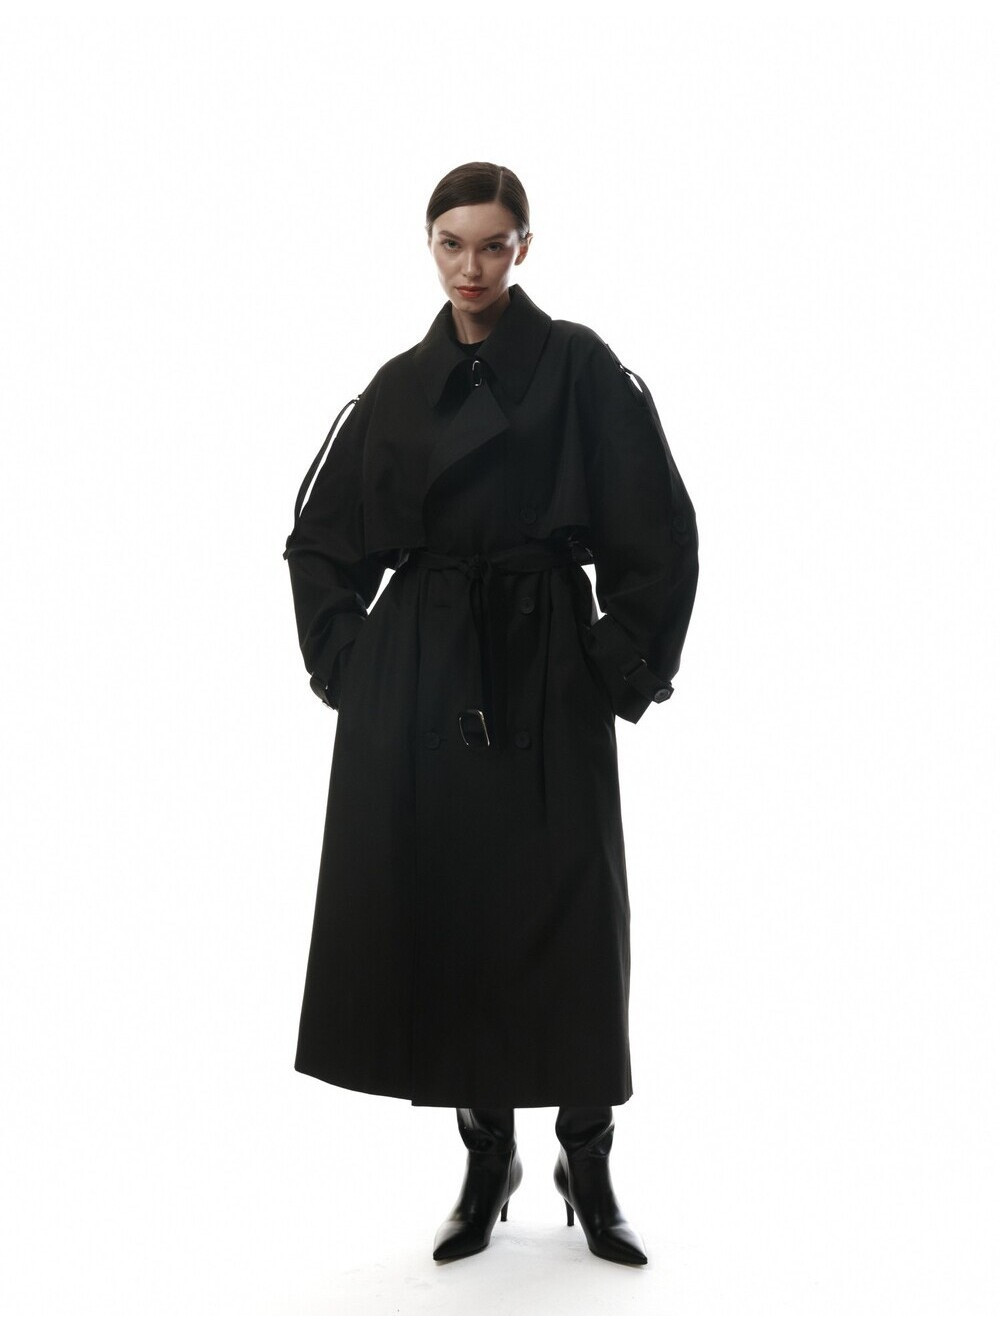 Trench coat in black